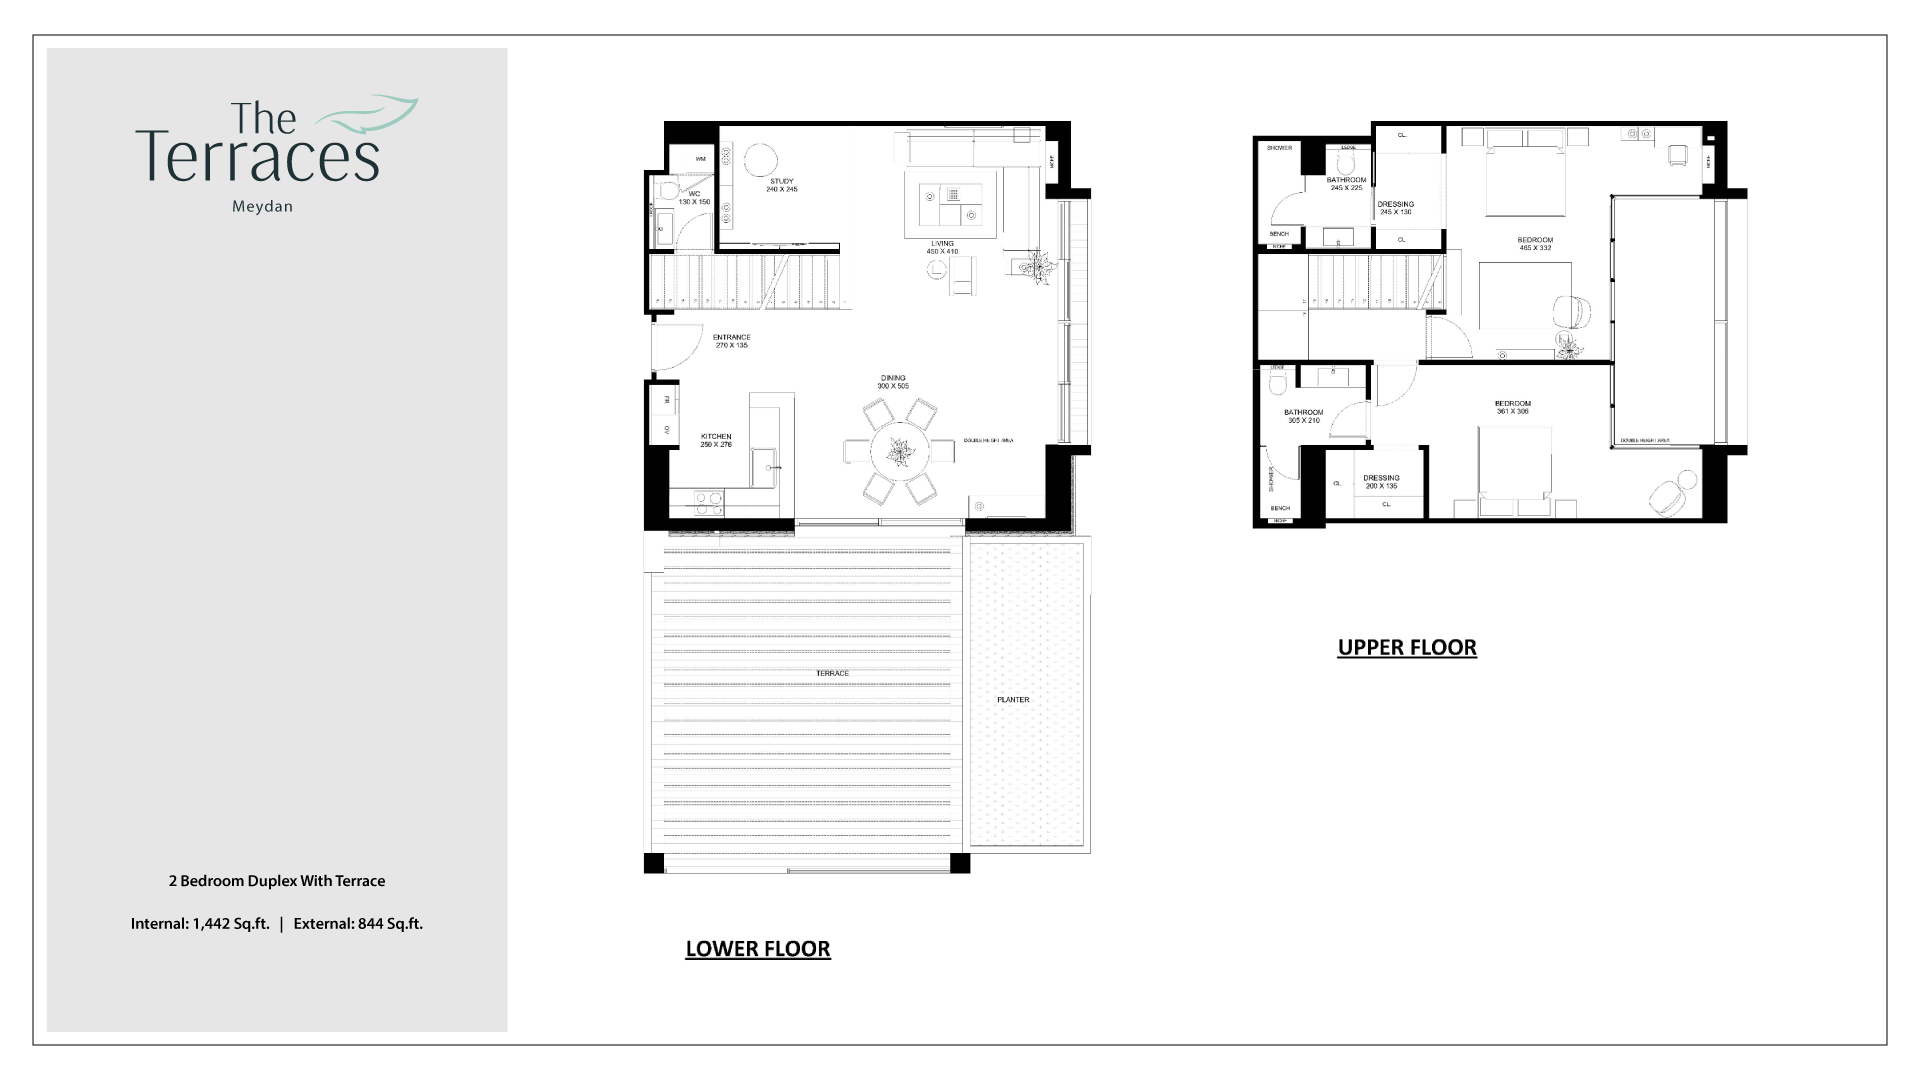 The Terraces 2 Bedroom Duplex With Terrace Floor Plan